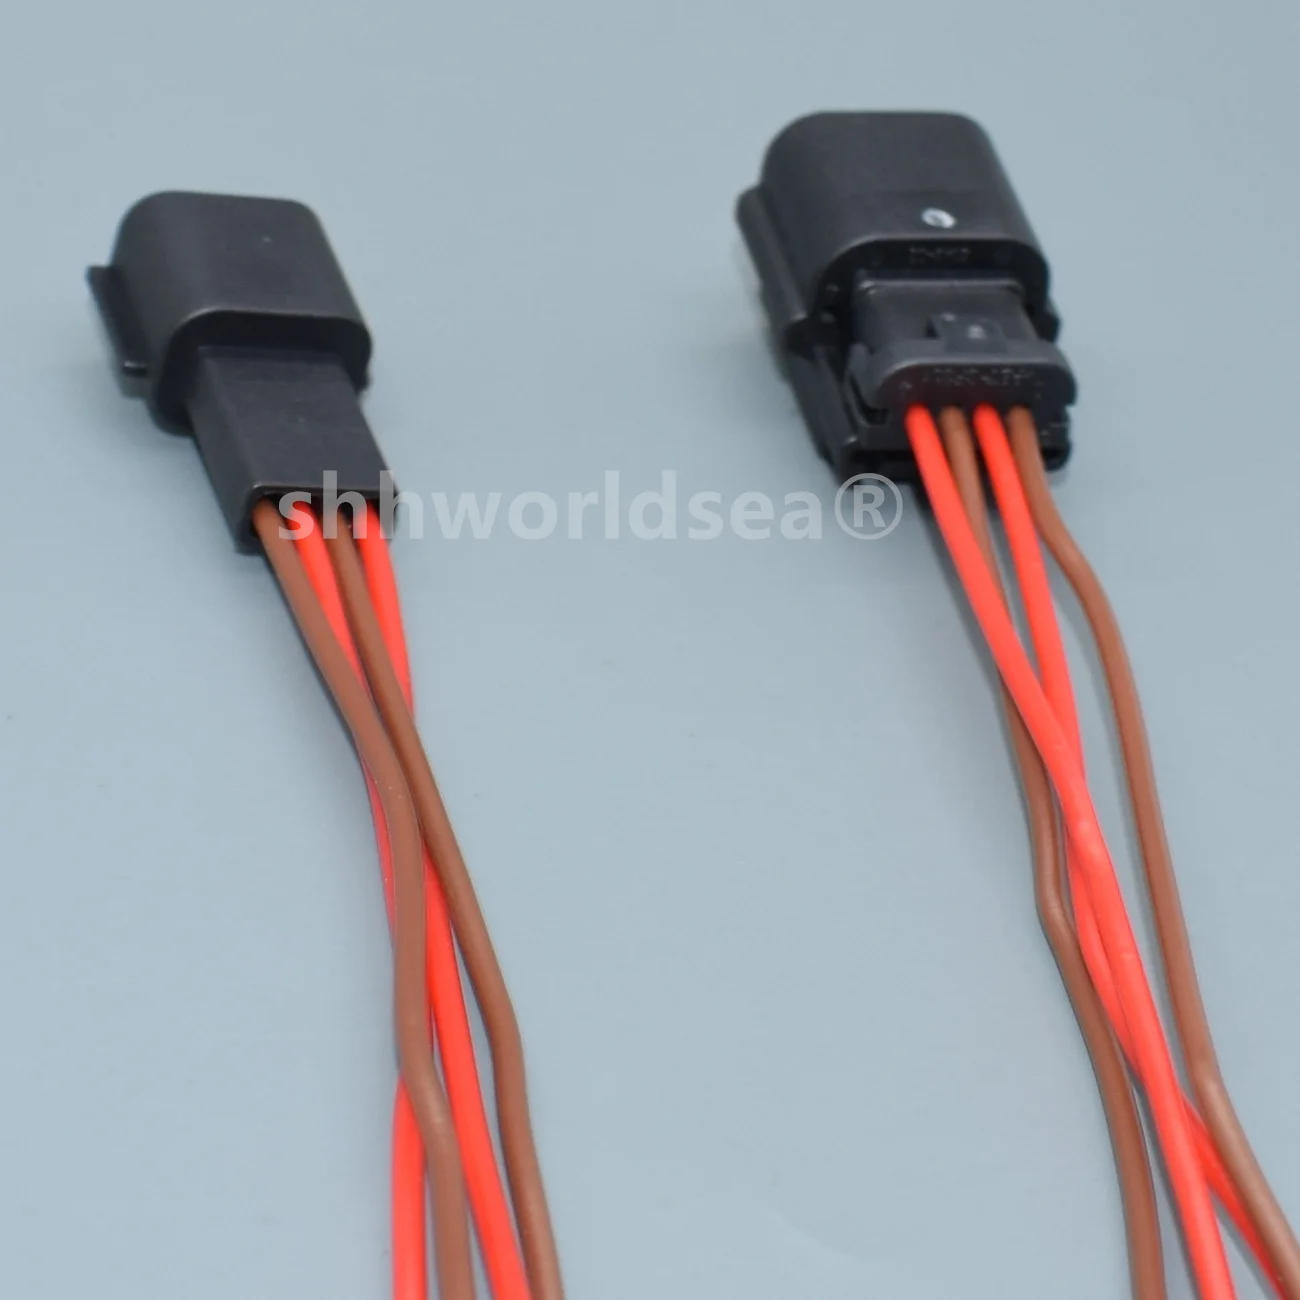 shhworldsea 4 tűs 0.6-os sorozatú autó passzív kulcs nélküli belépő antenna érzékelő huzal csatlakozó kábel lezáratlan aljzat - 5